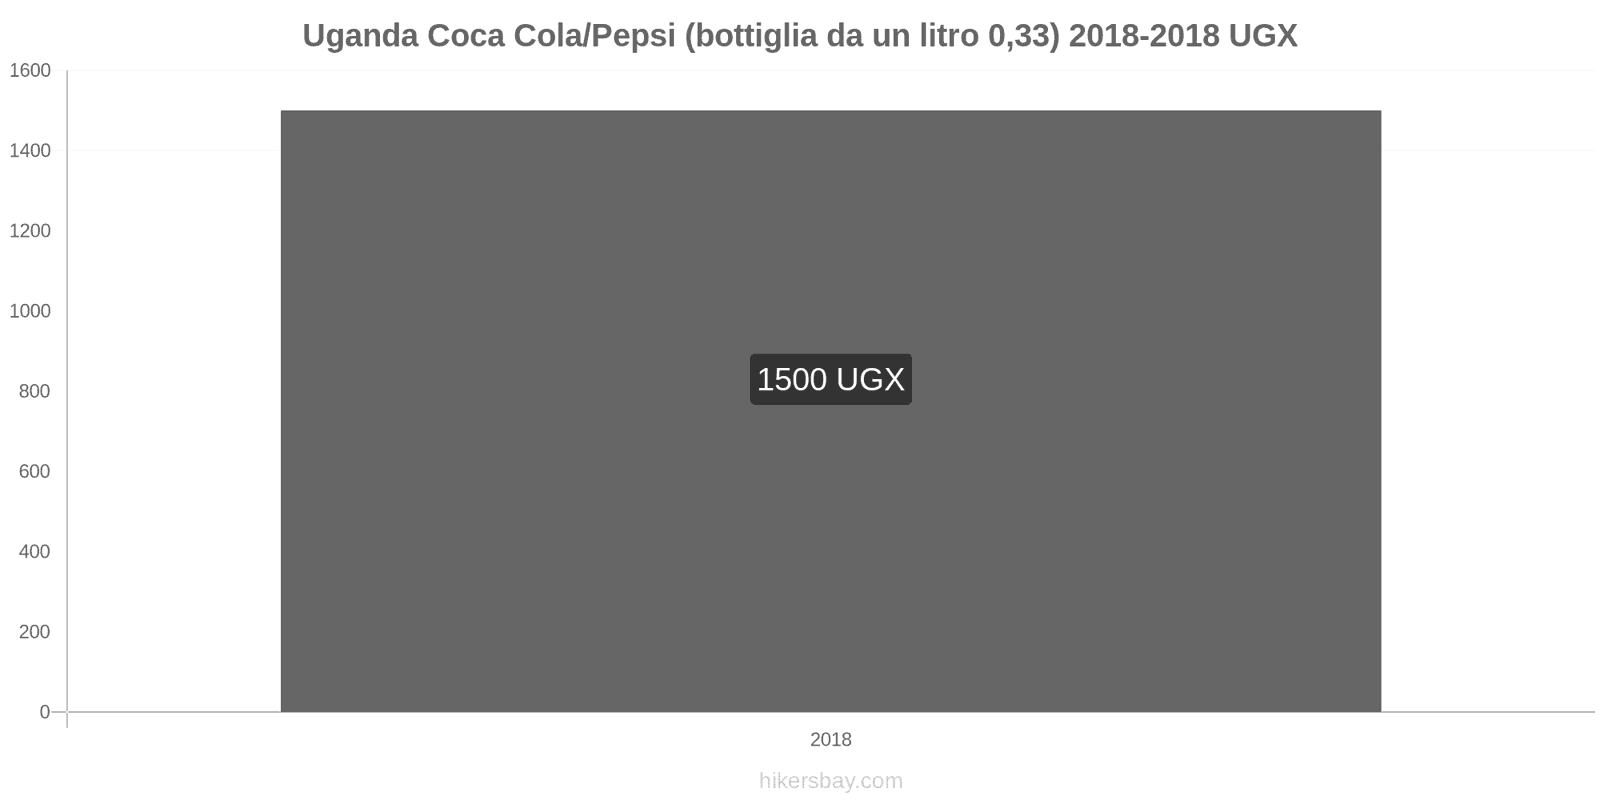 Uganda cambi di prezzo Coca-Cola/Pepsi (bottiglia da 0.33 litri) hikersbay.com